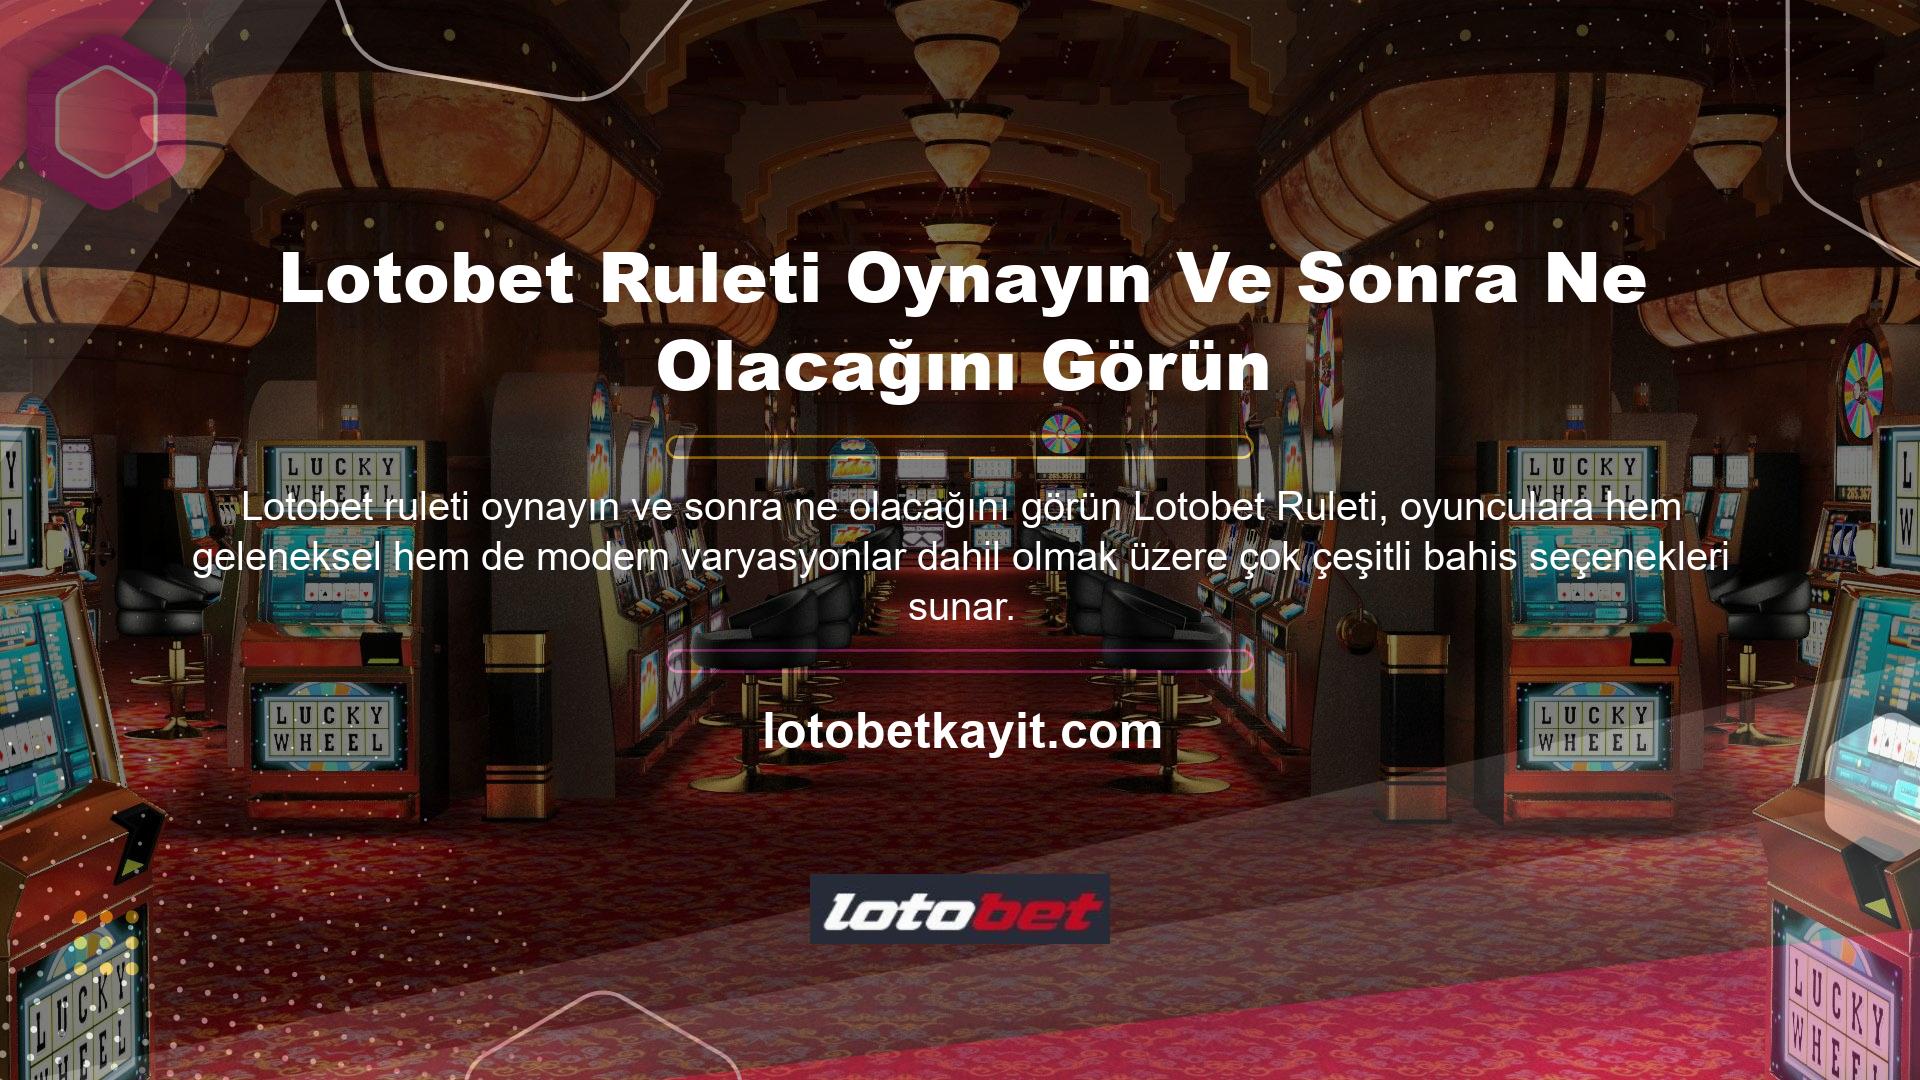 Lotobet Casino da oyun tutkunları için aynı olanakları sunuyor